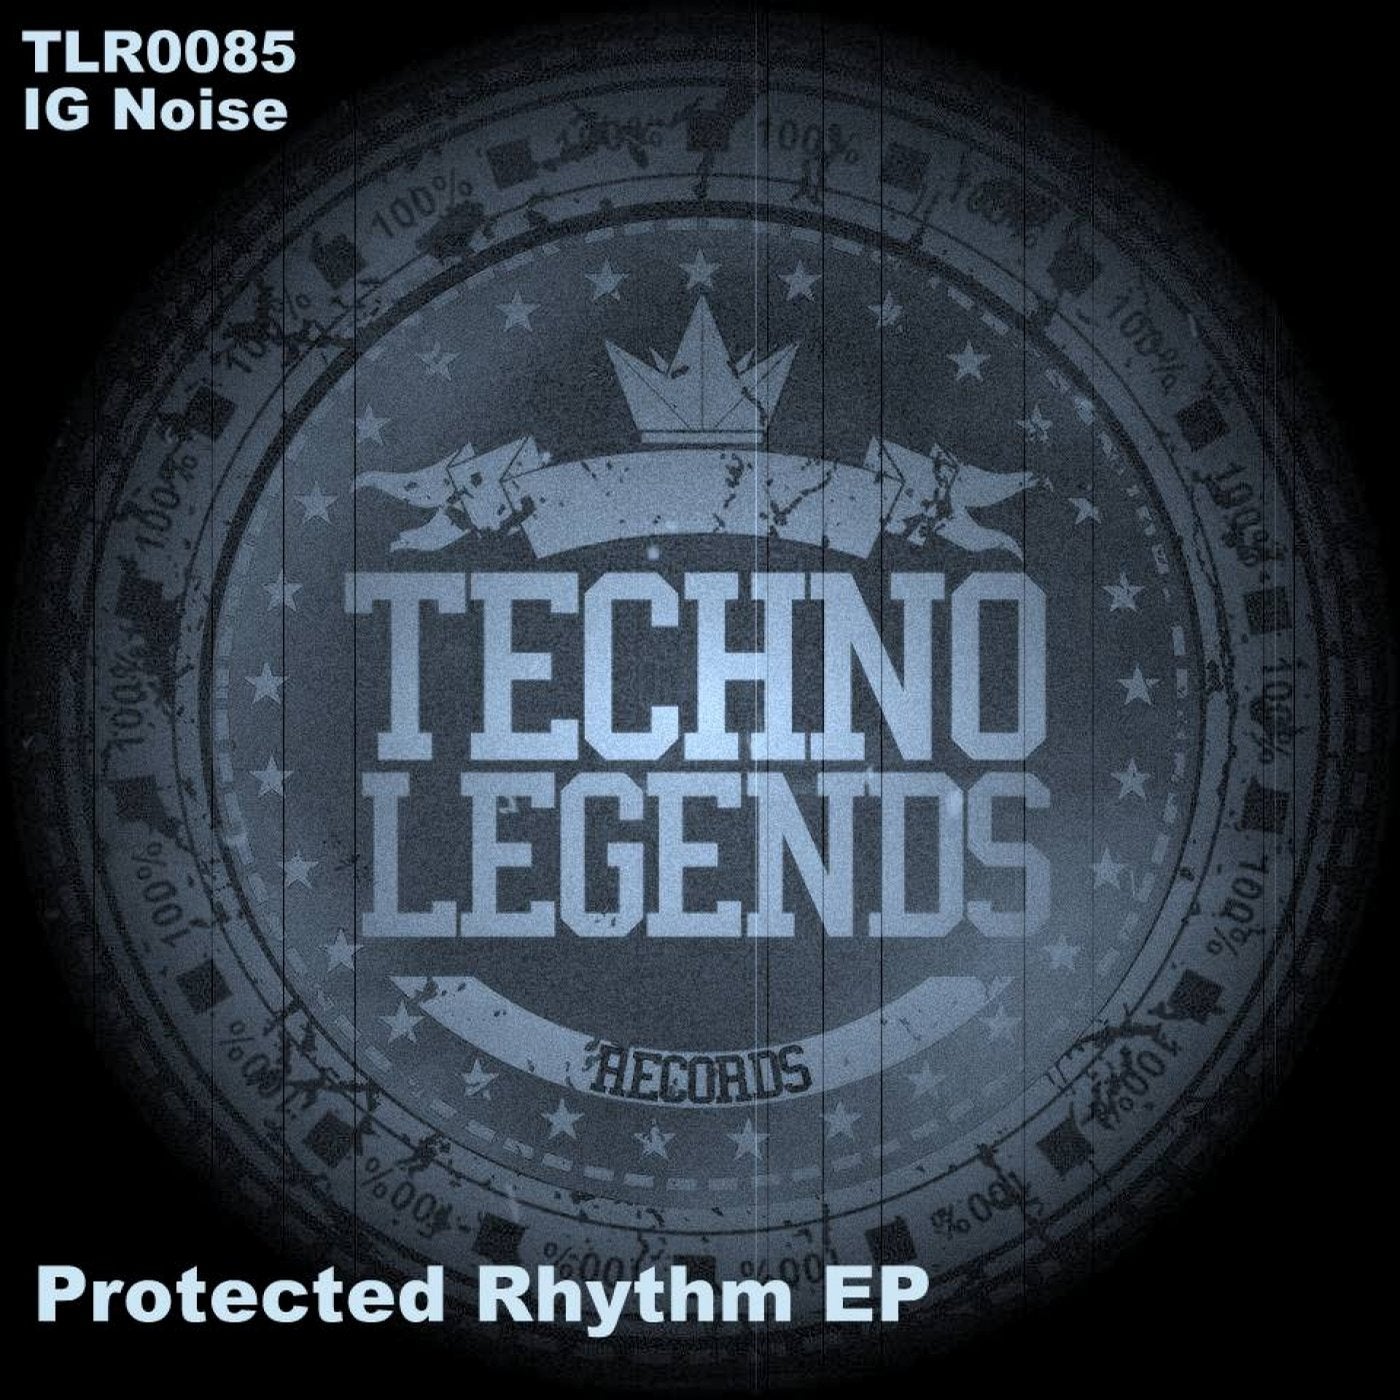 Protected Rhythm Single / EP